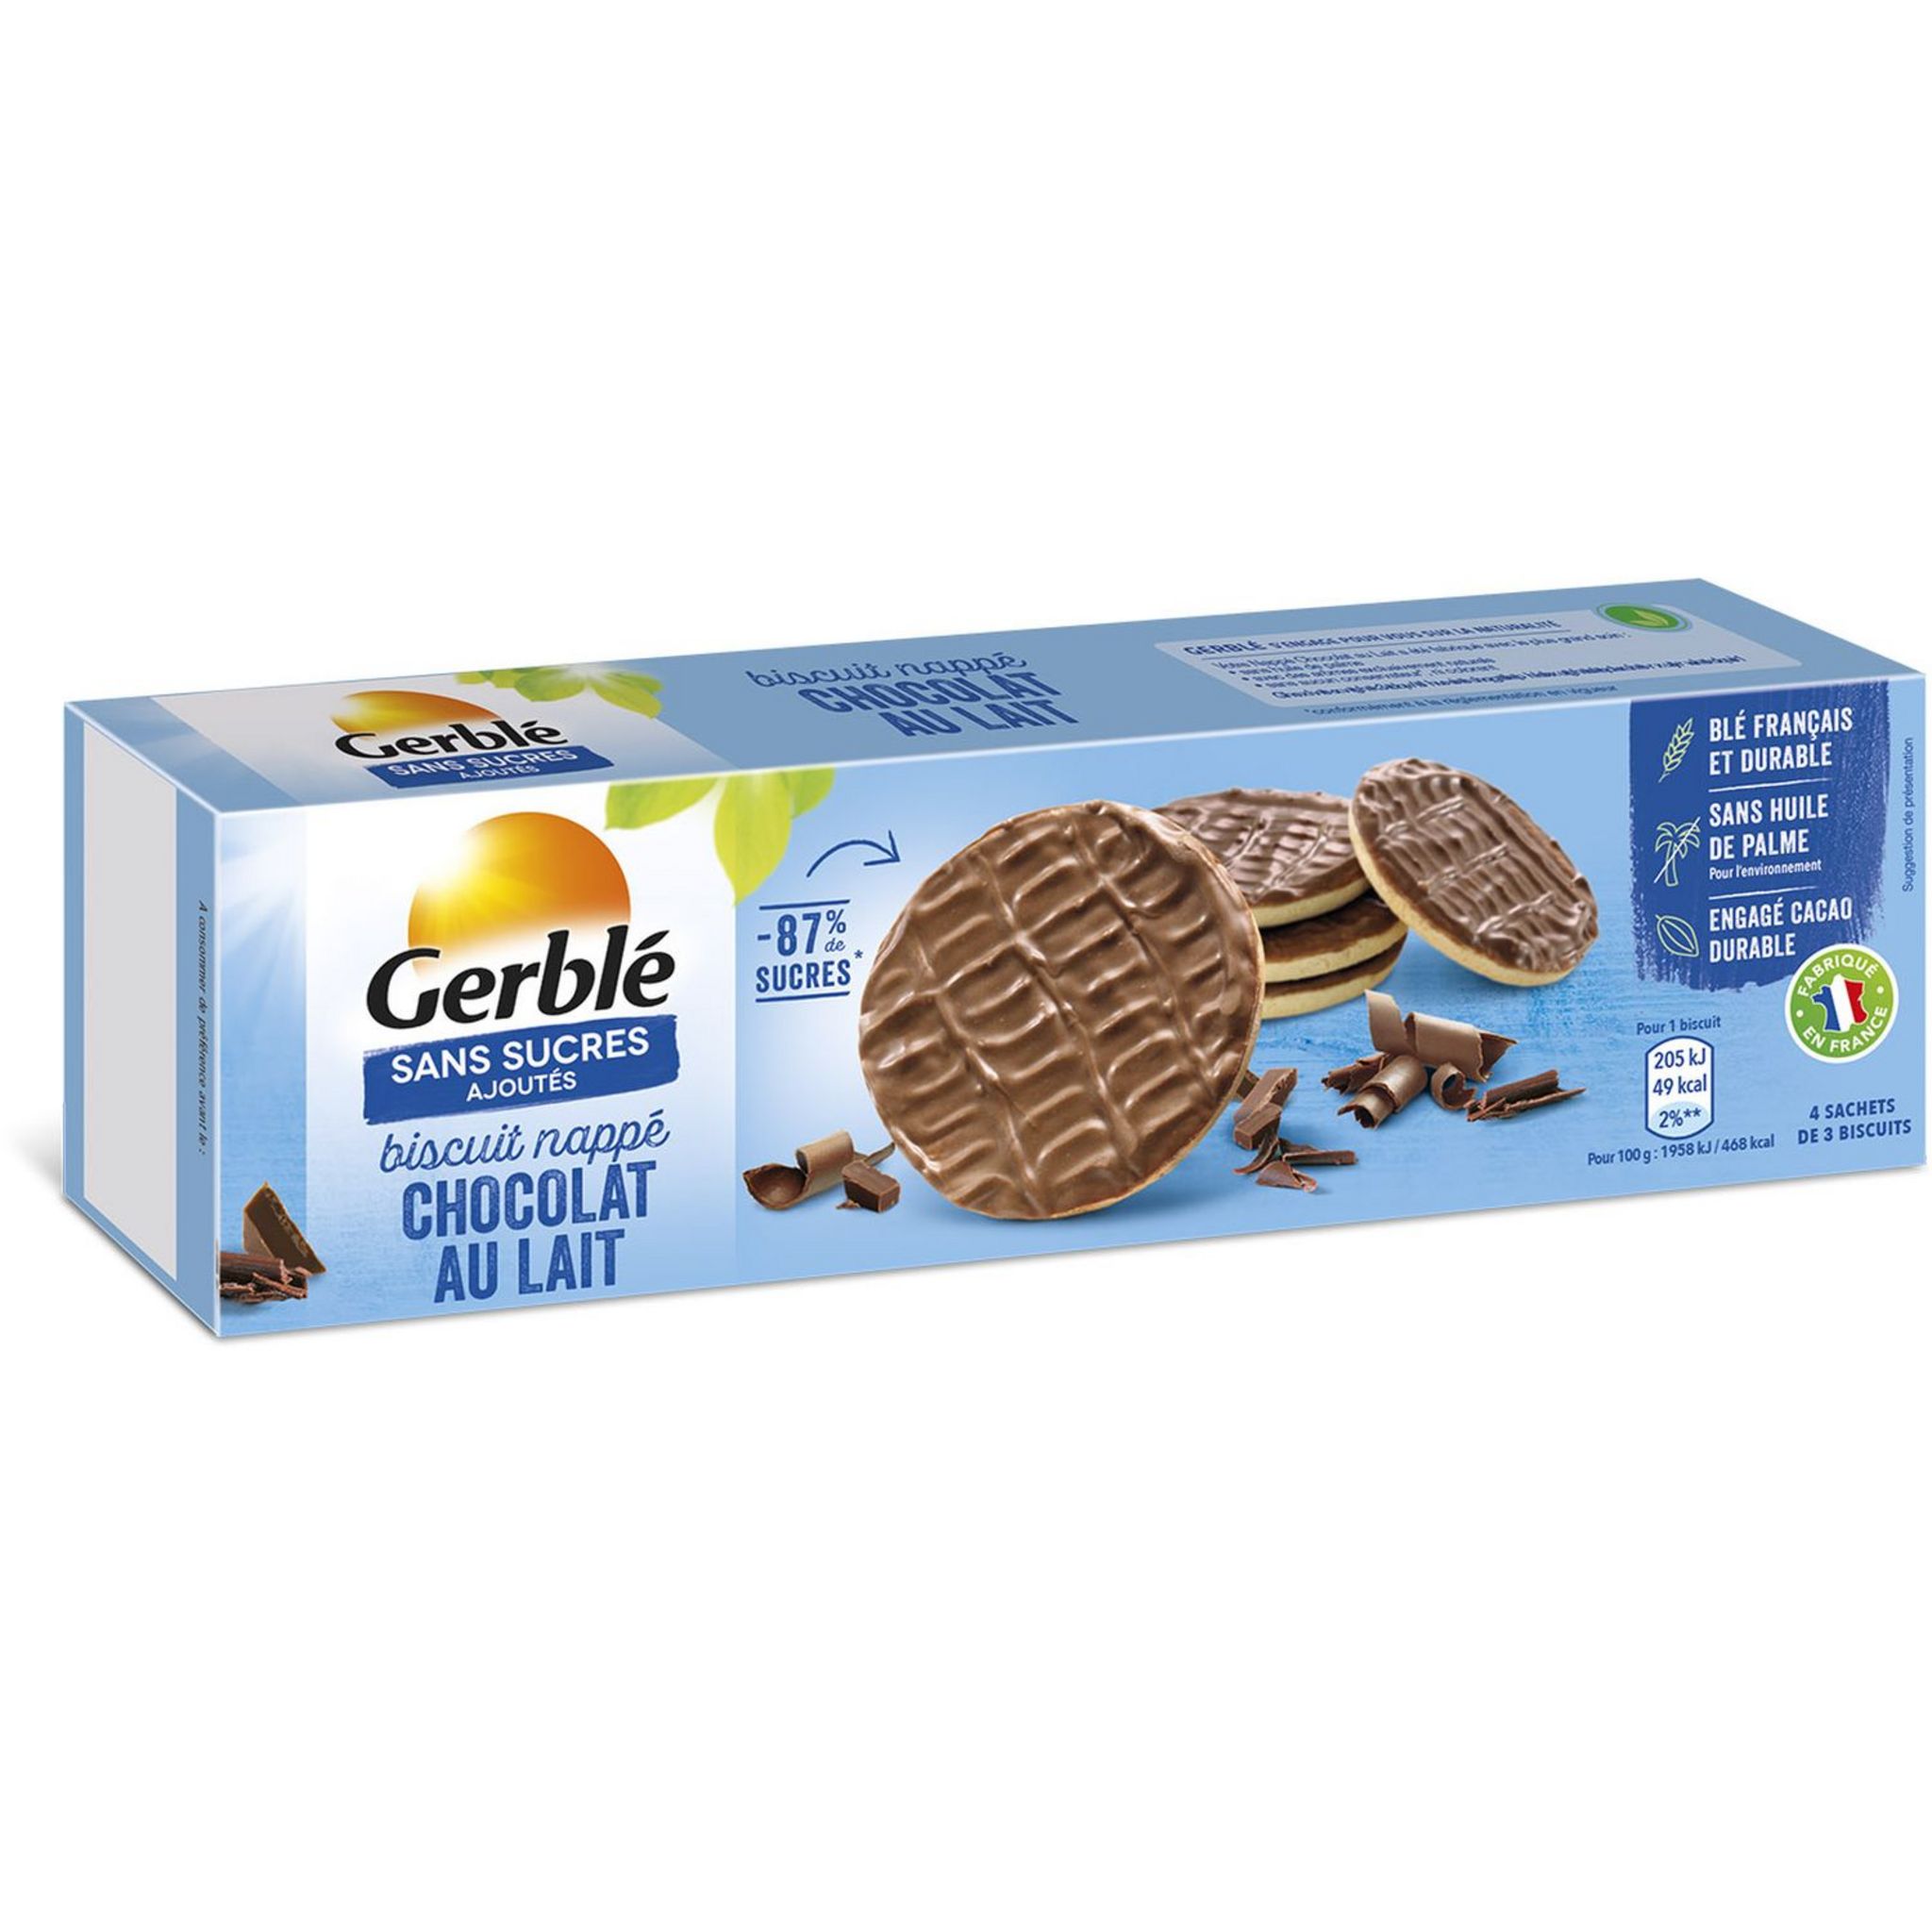 Biscuits Gerblé lait chocolat